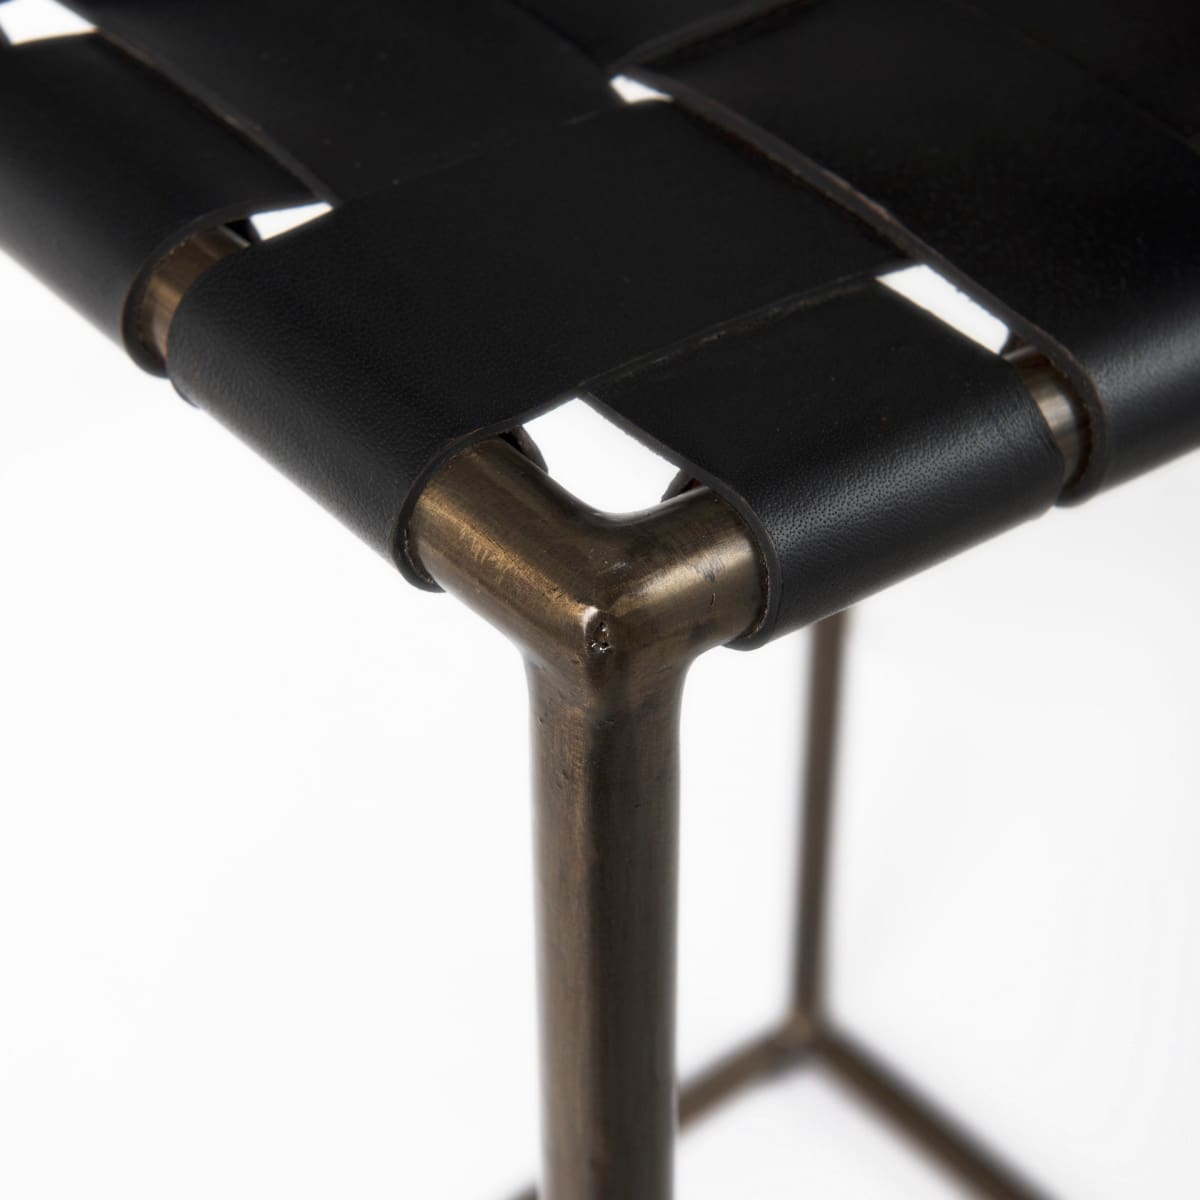 Clarissa Bar Counter Stool Black Leather | Gold Metal | Bar - bar-stools